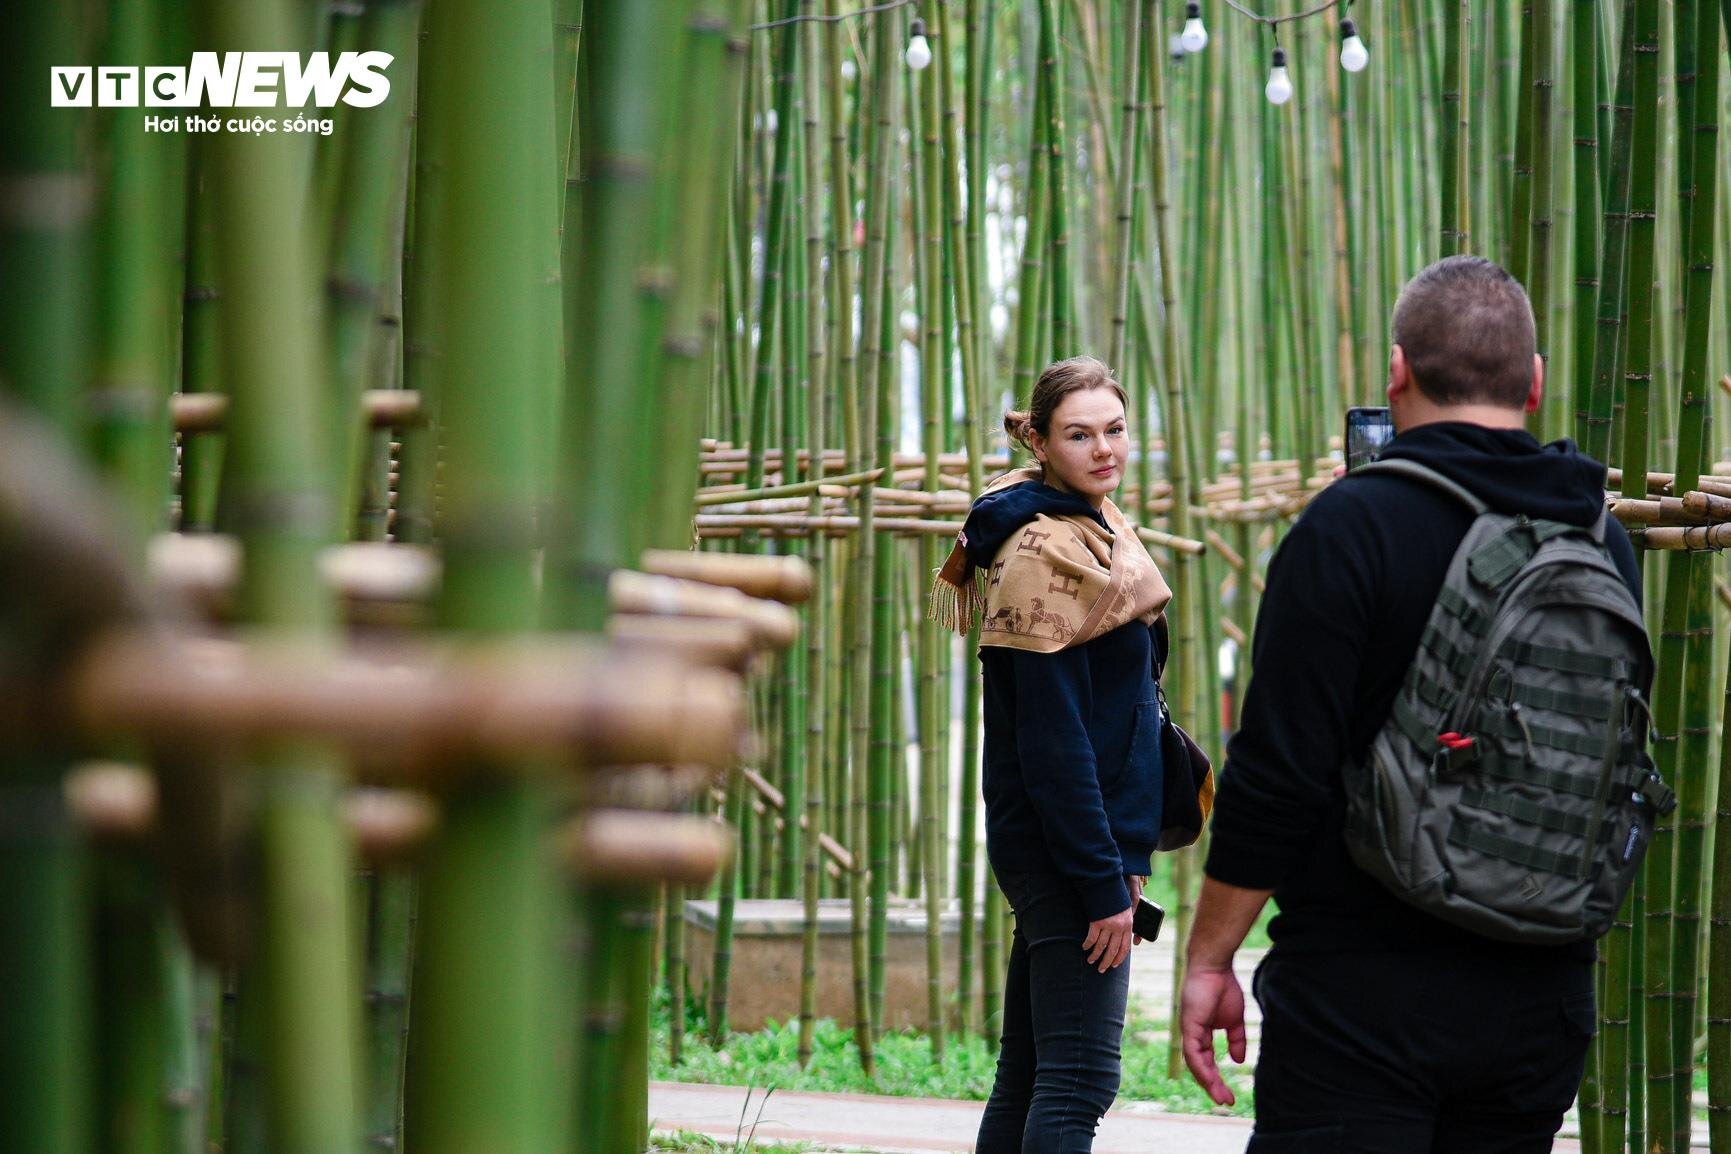 Du khách nước ngoài mê mẩn vườn trúc đẹp như trong phim ở Hà Nội - 9